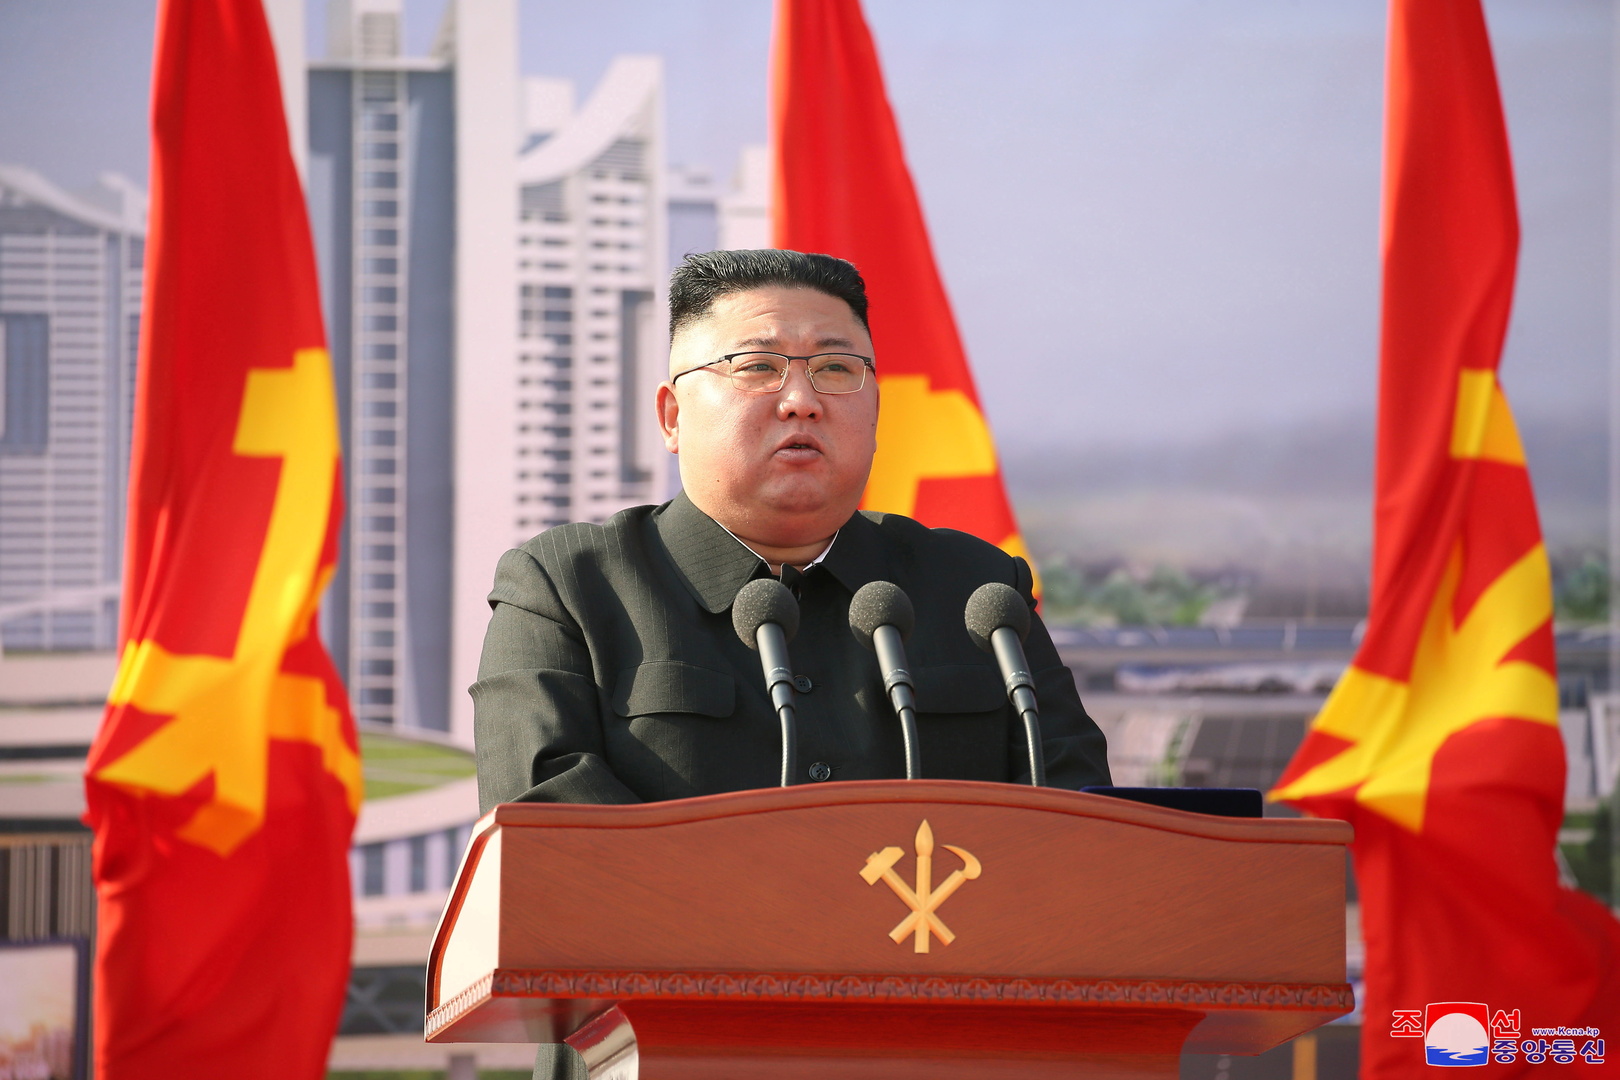 الحزب الحاكم في كوريا الشمالية يستحدث منصب الأمين الأول